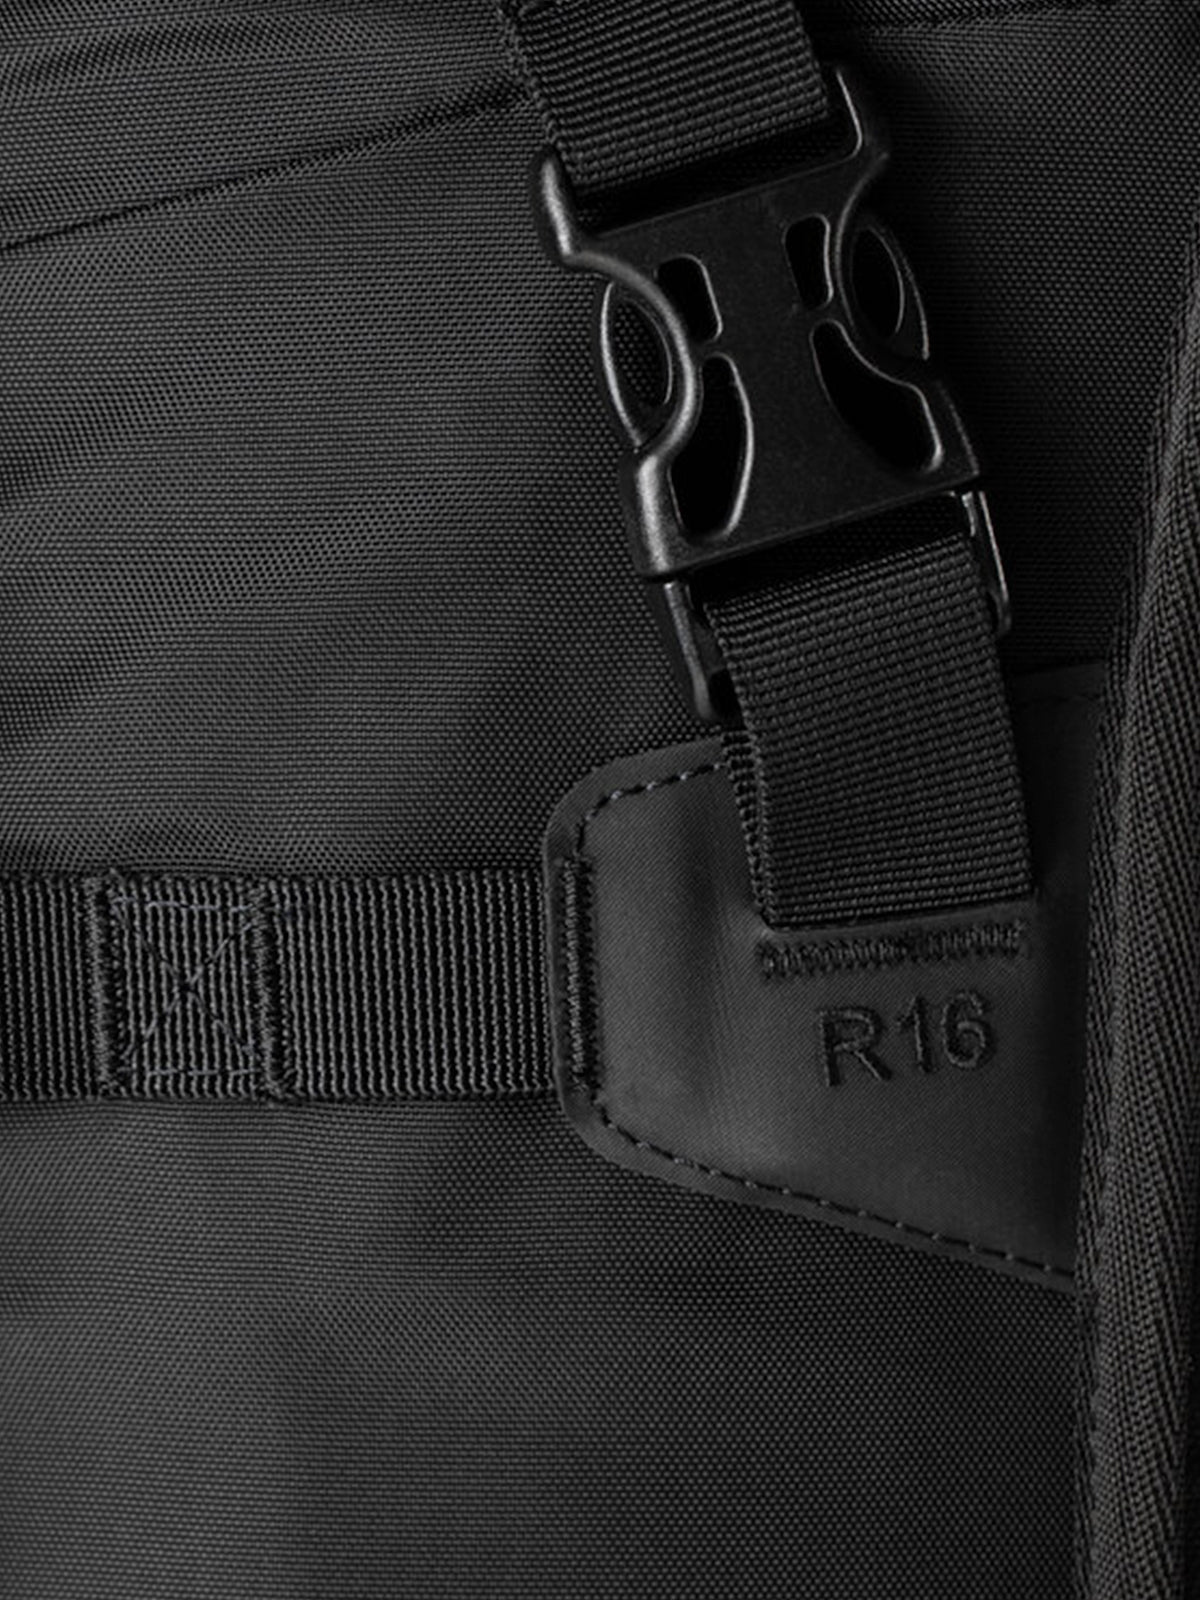 Kriega R16 Backpack detail of buckle